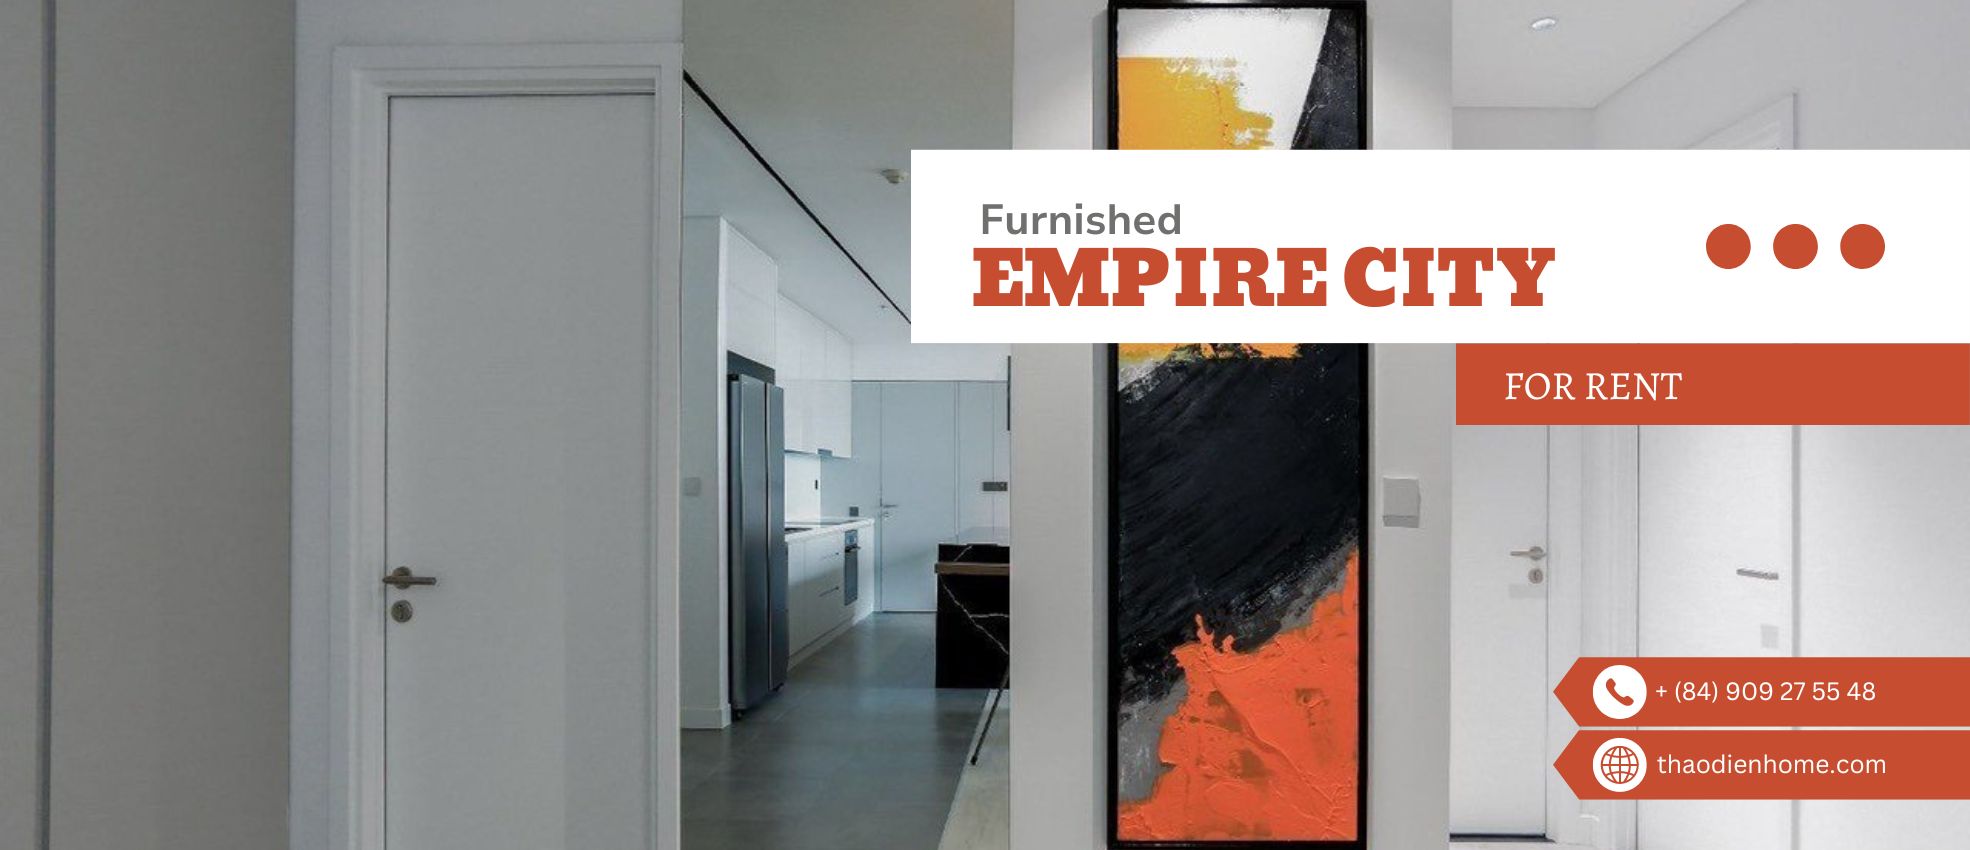 Trải nghiệm cuộc sống xa hoa trong căn hộ 3 phòng ngủ tiện nghi tại Linden Residence – Empire City